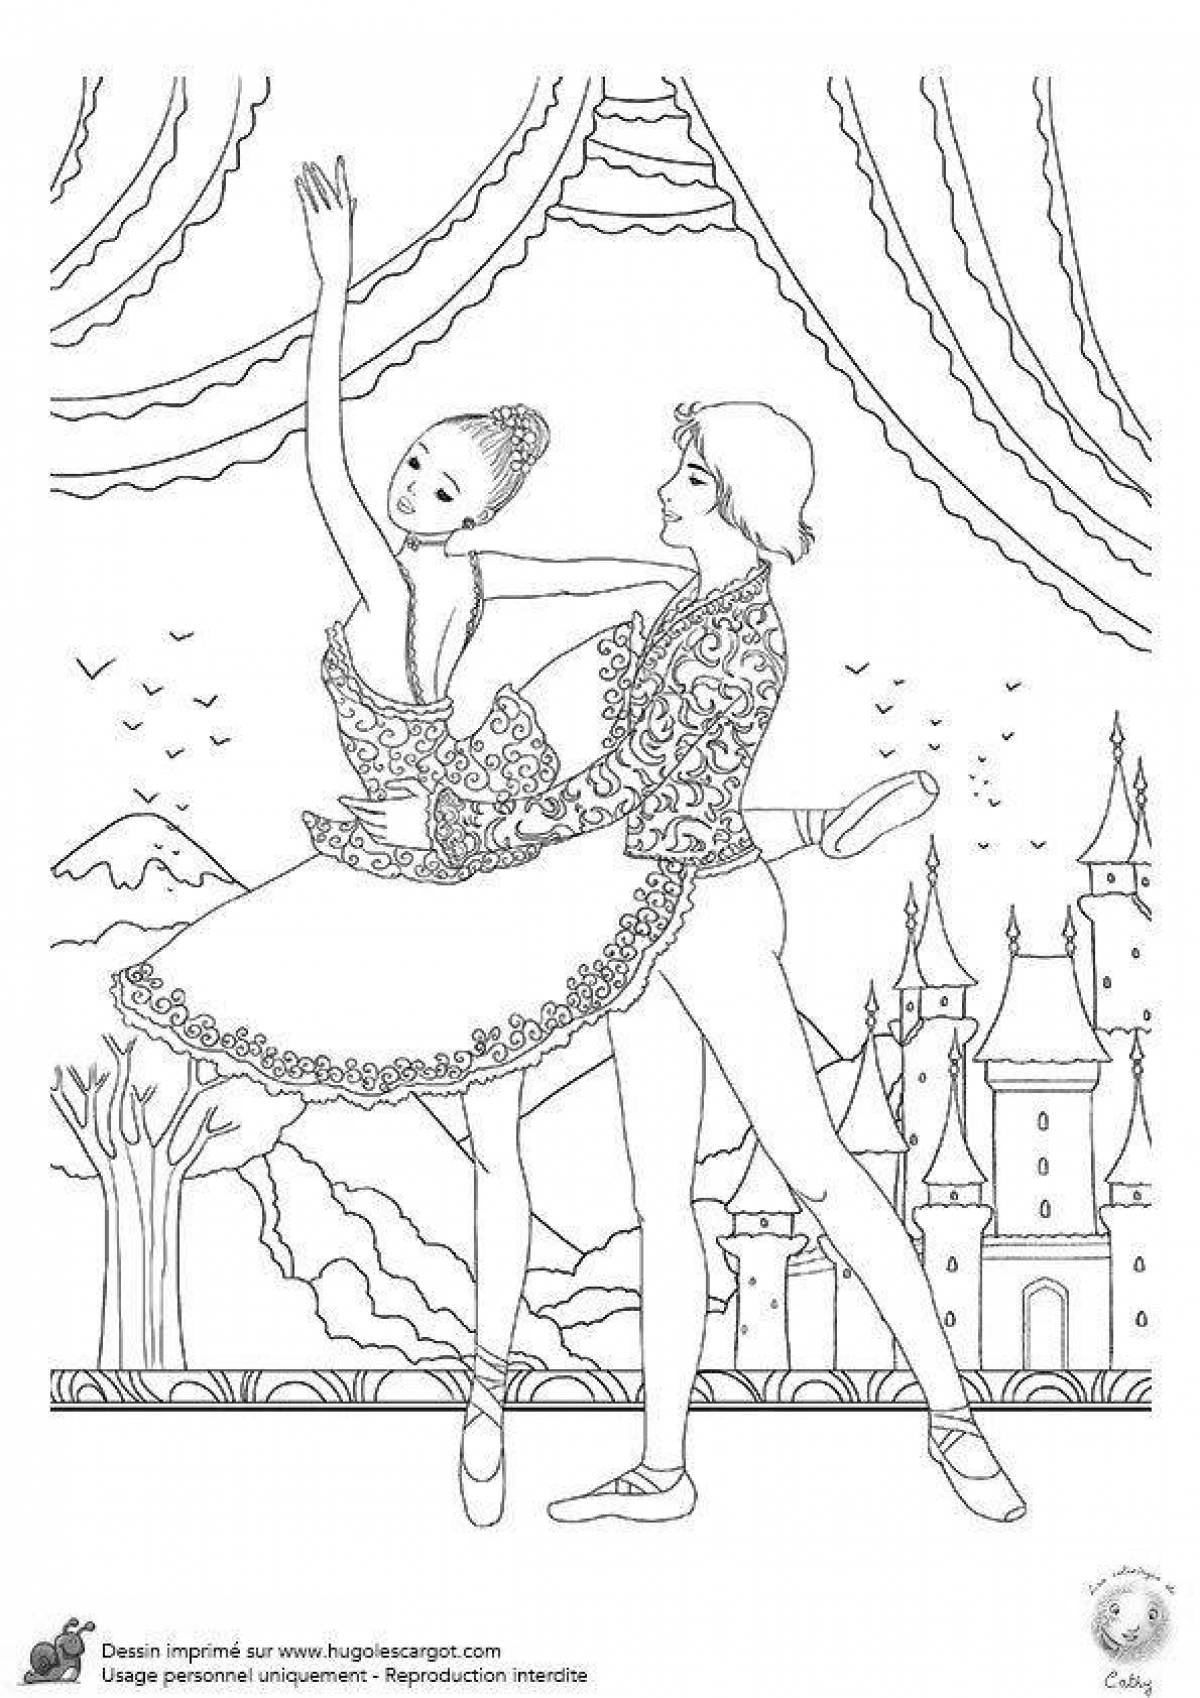 Иллюстрация к балету Золушка